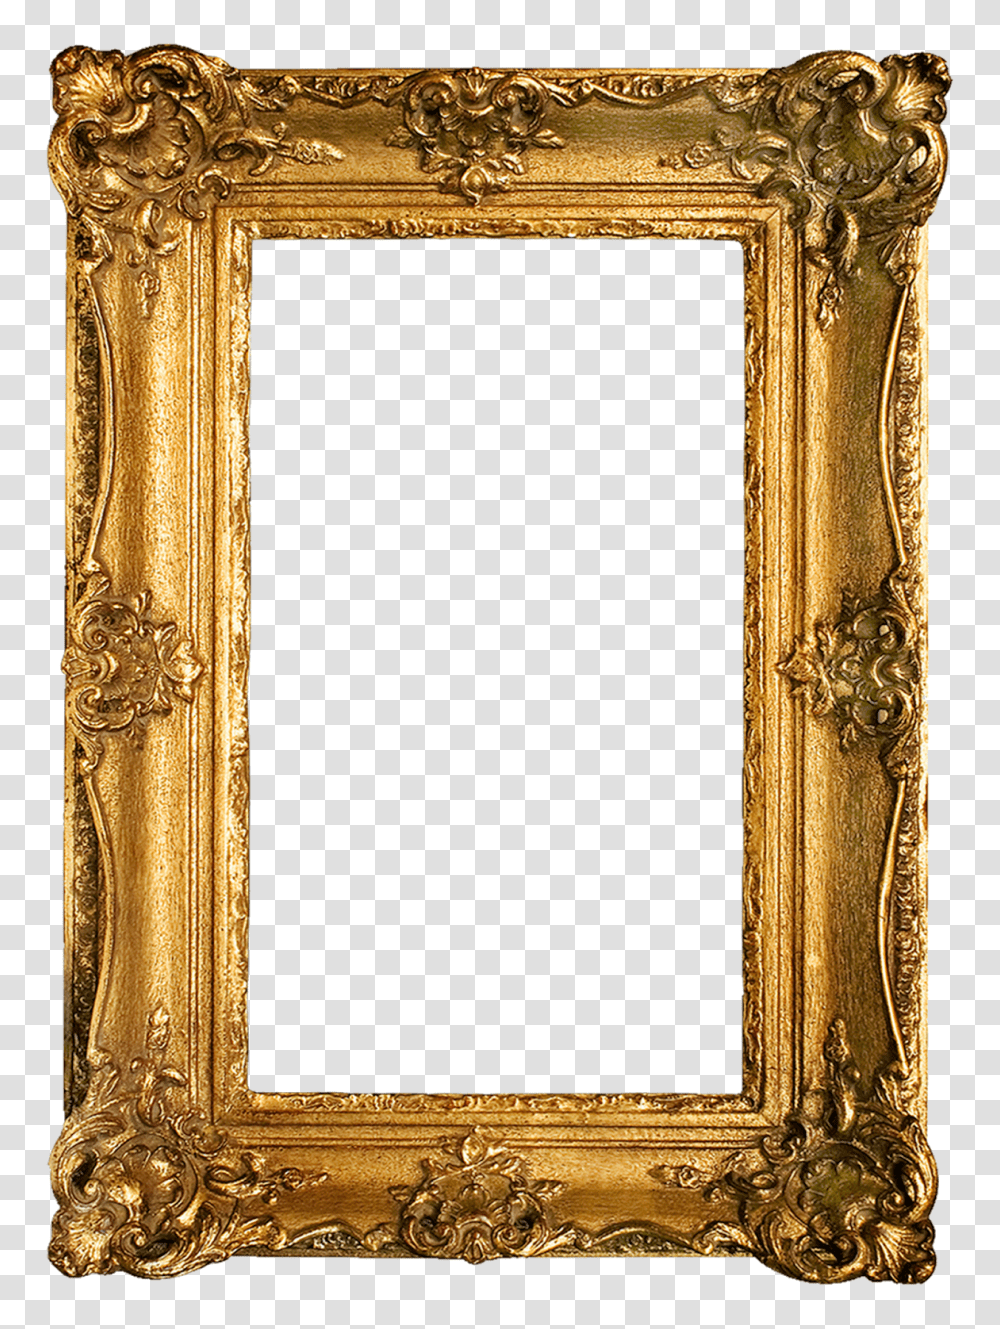 Golden Frame Image Arts, Mirror, Gate Transparent Png